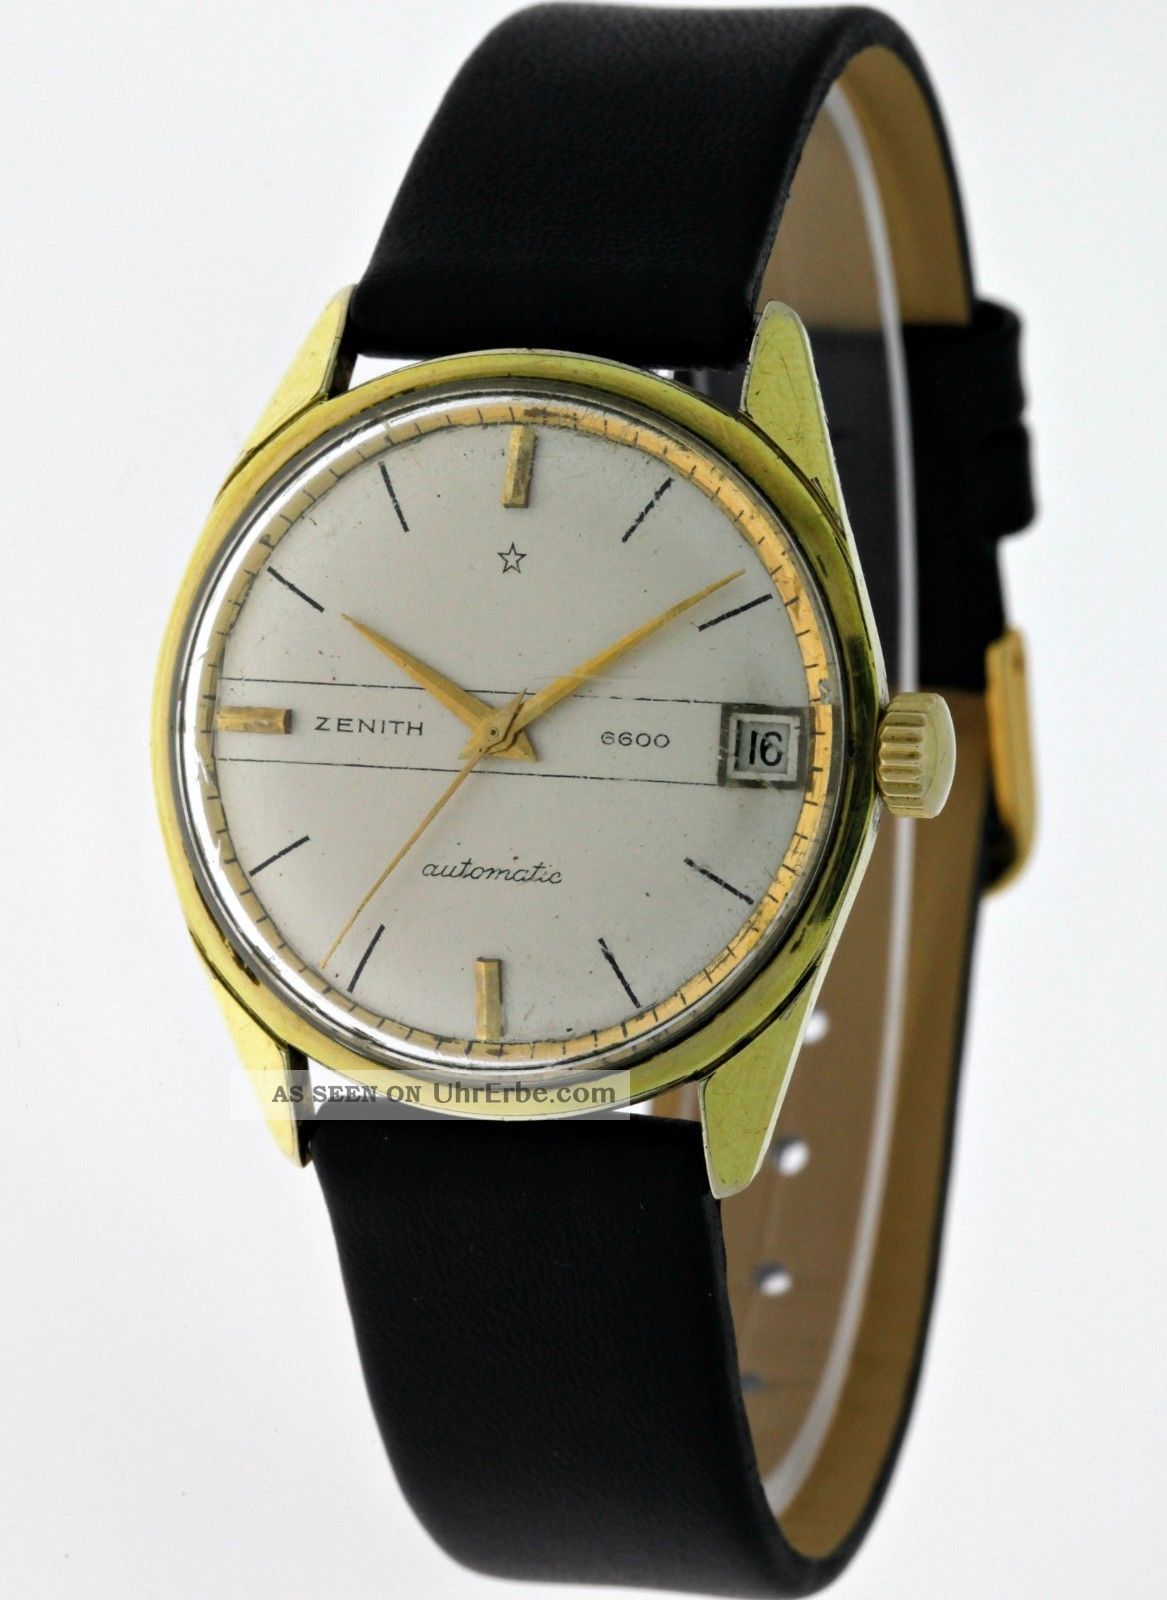 Seltene Vintage Zenith 6600 Automatik Datum Herren 20micron Gold Sechziger Jahre Armbanduhren Bild